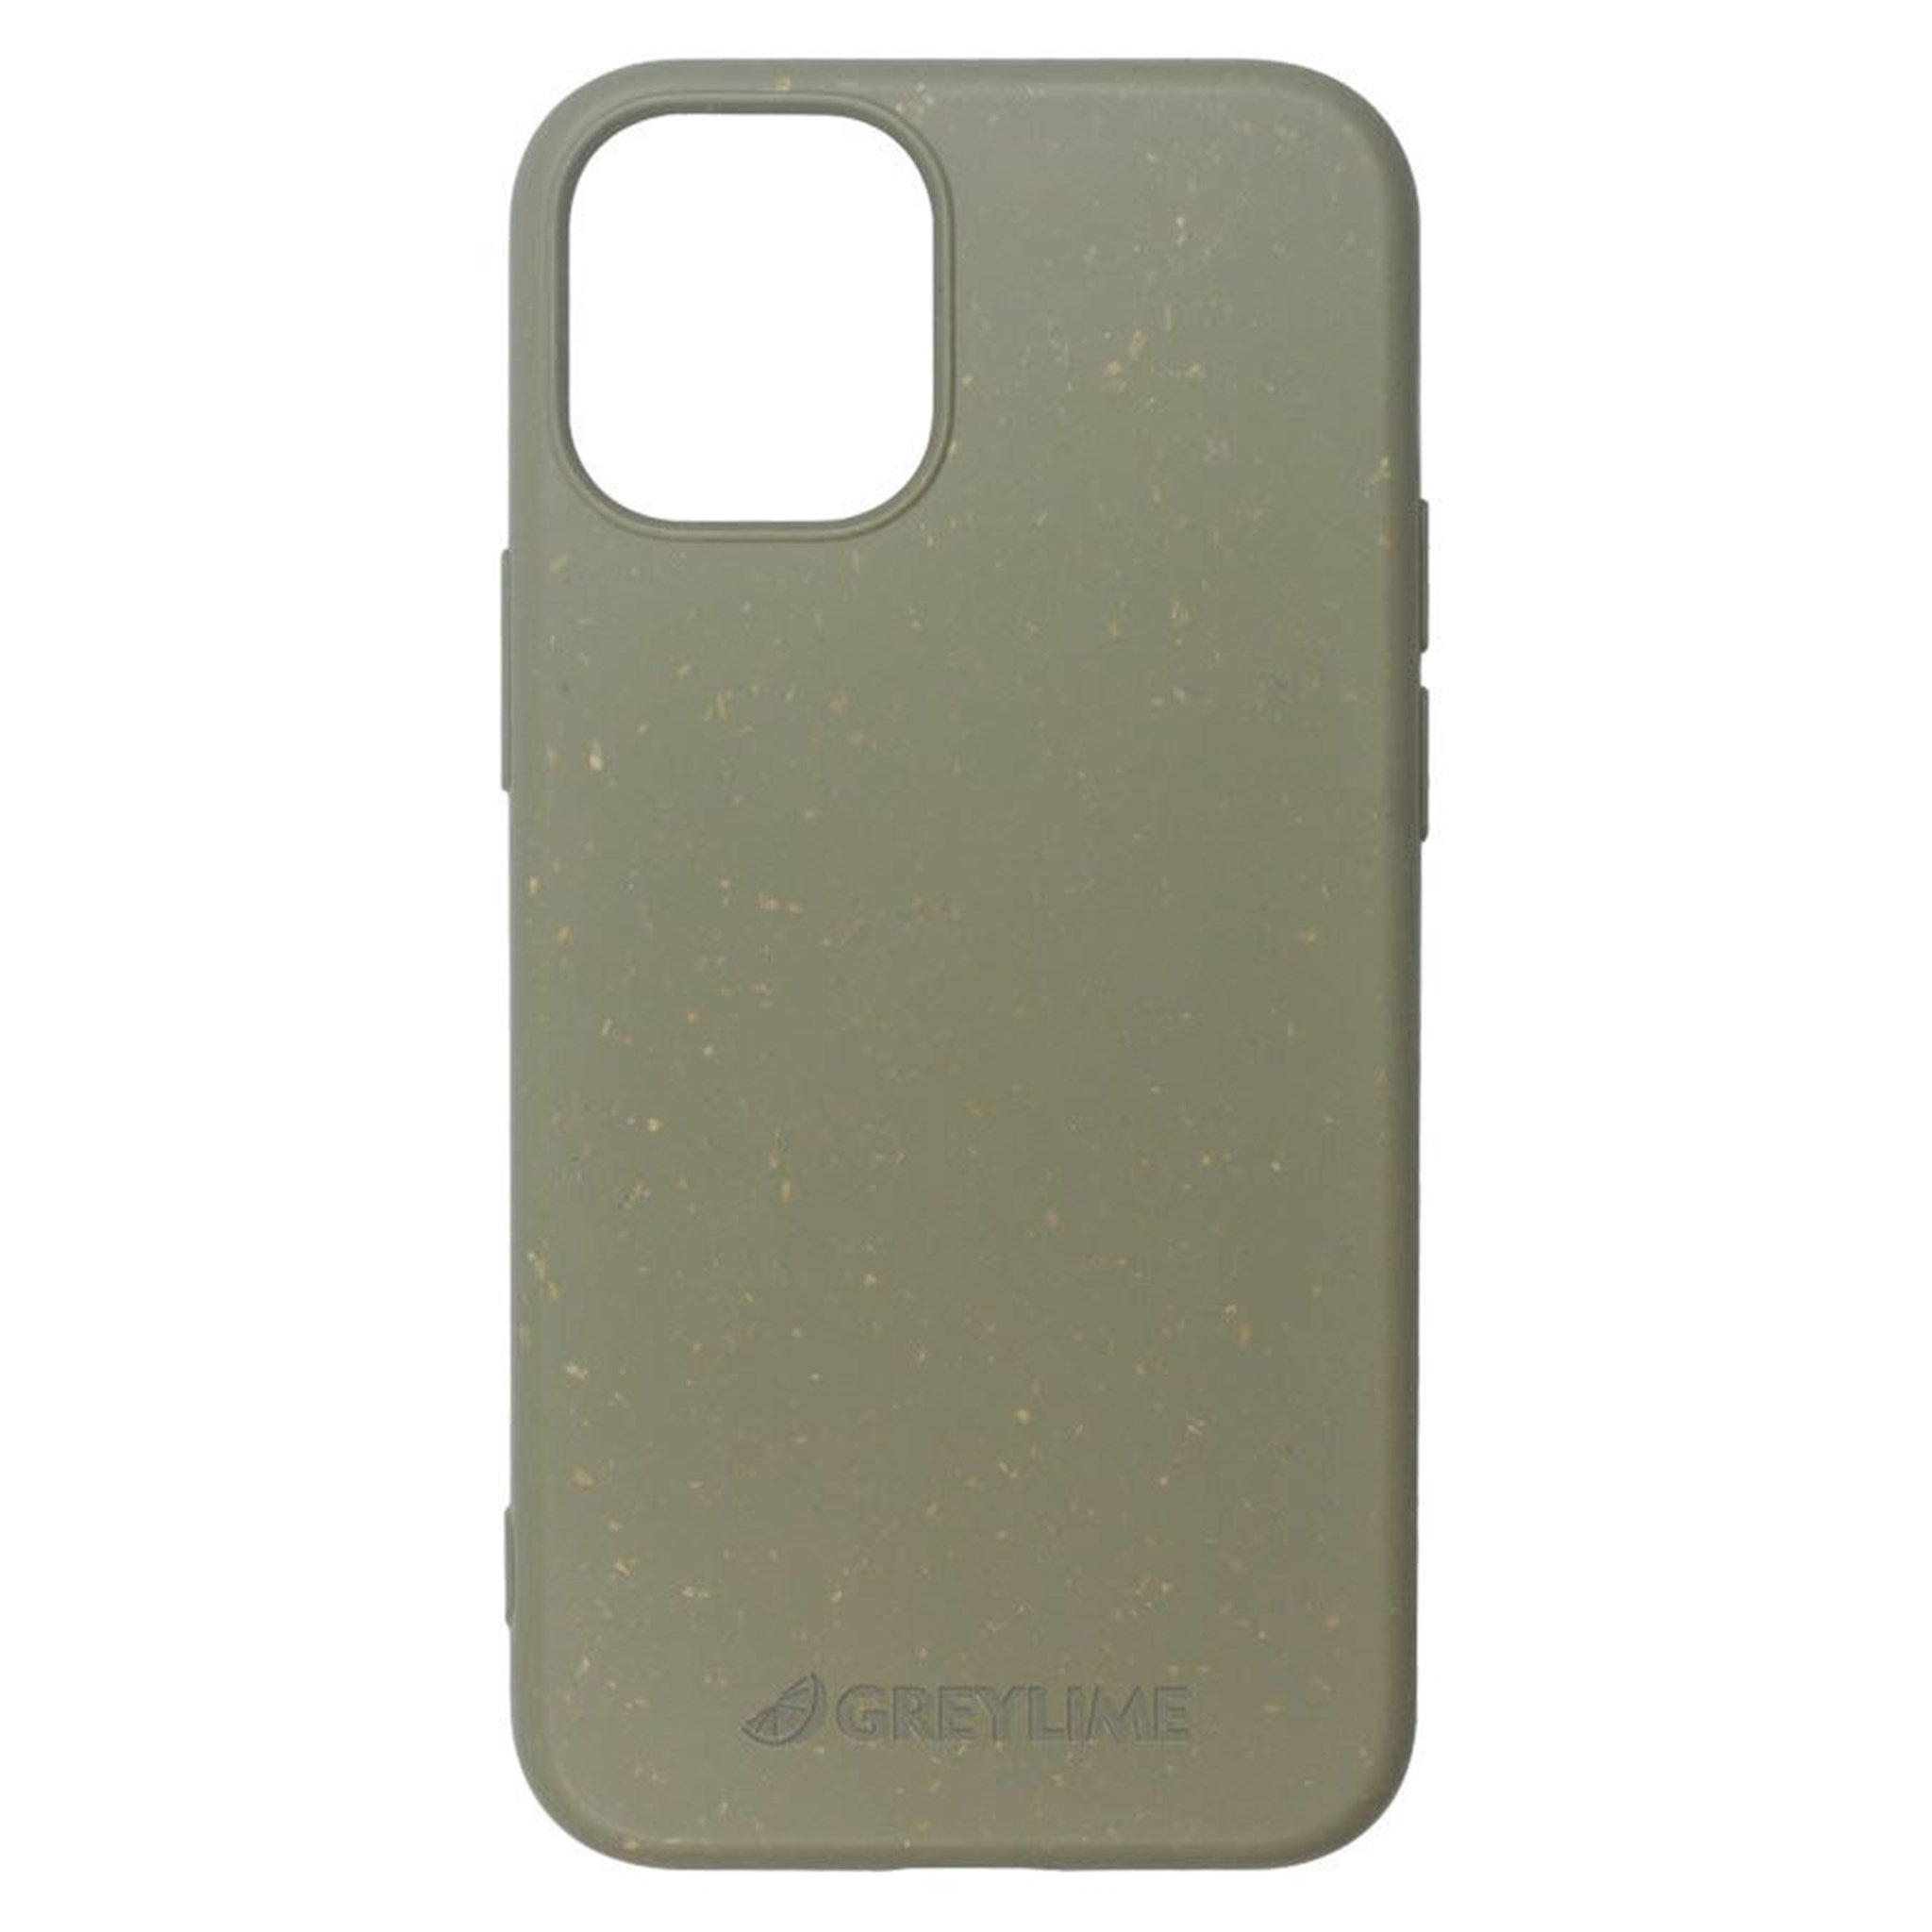 Billede af GreyLime iPhone 12 Mini Miljøvenligt Cover Grøn hos GreyLime